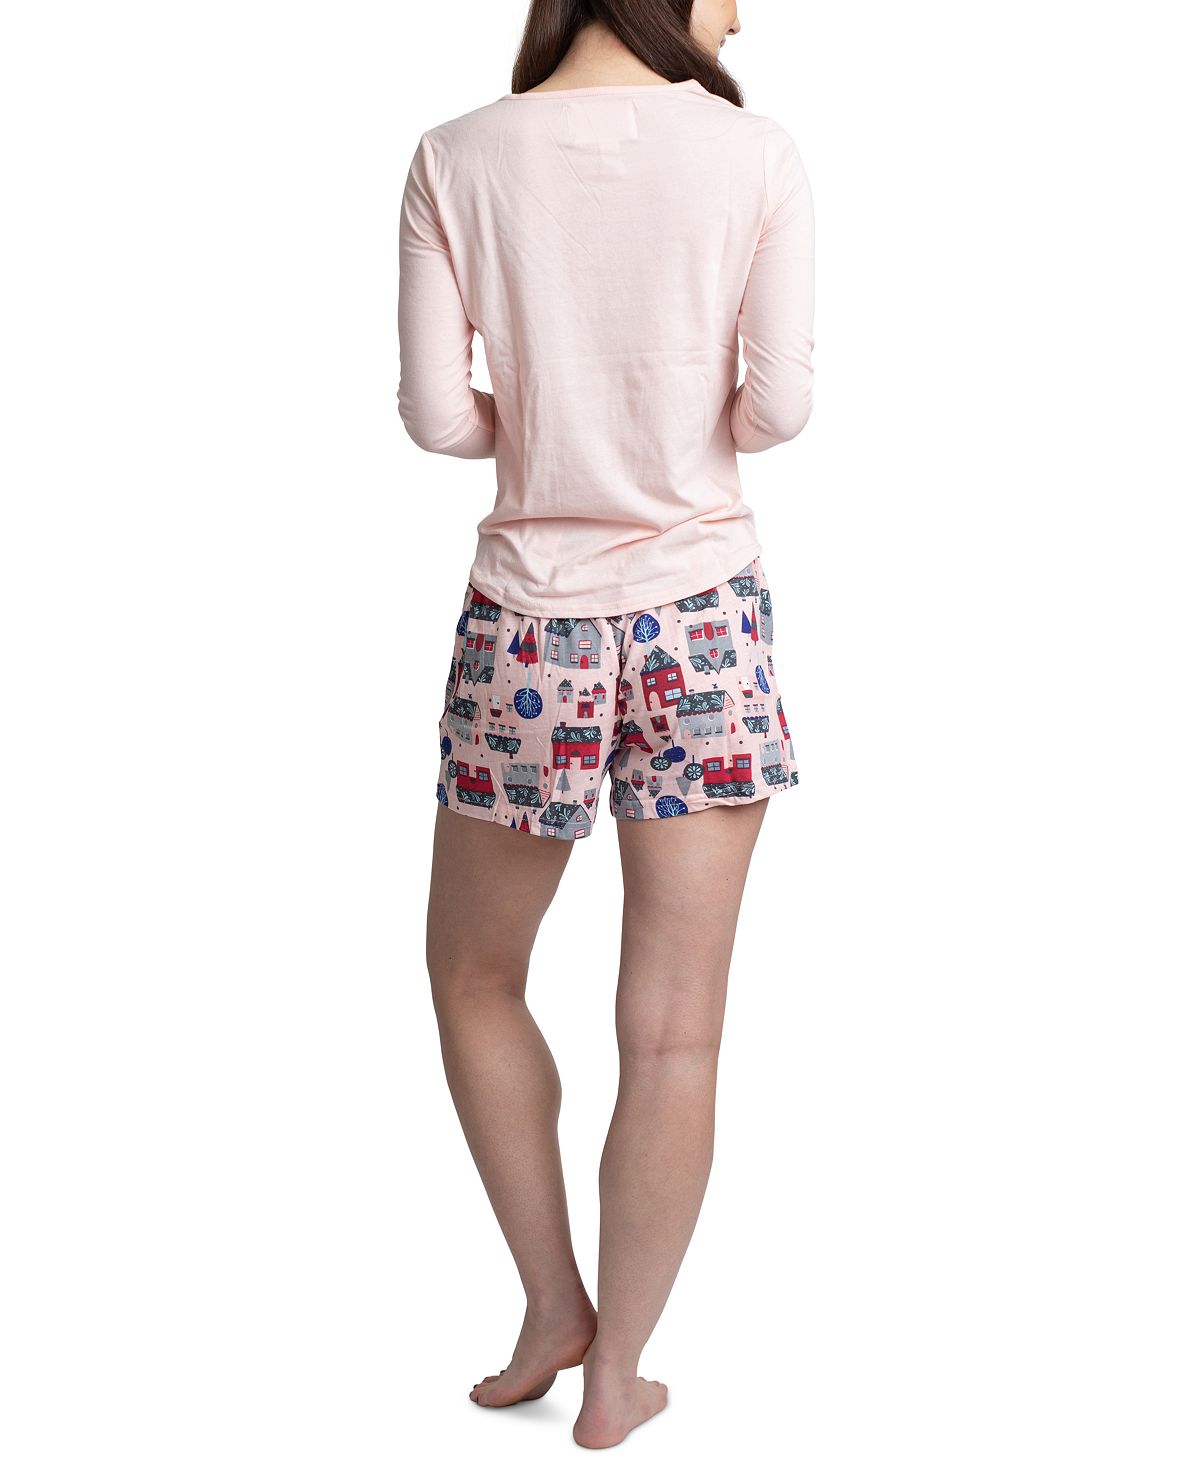 Muk Luks Top Pants & Boxer Shorts 3pc Pajama Gift Set Pink Tree